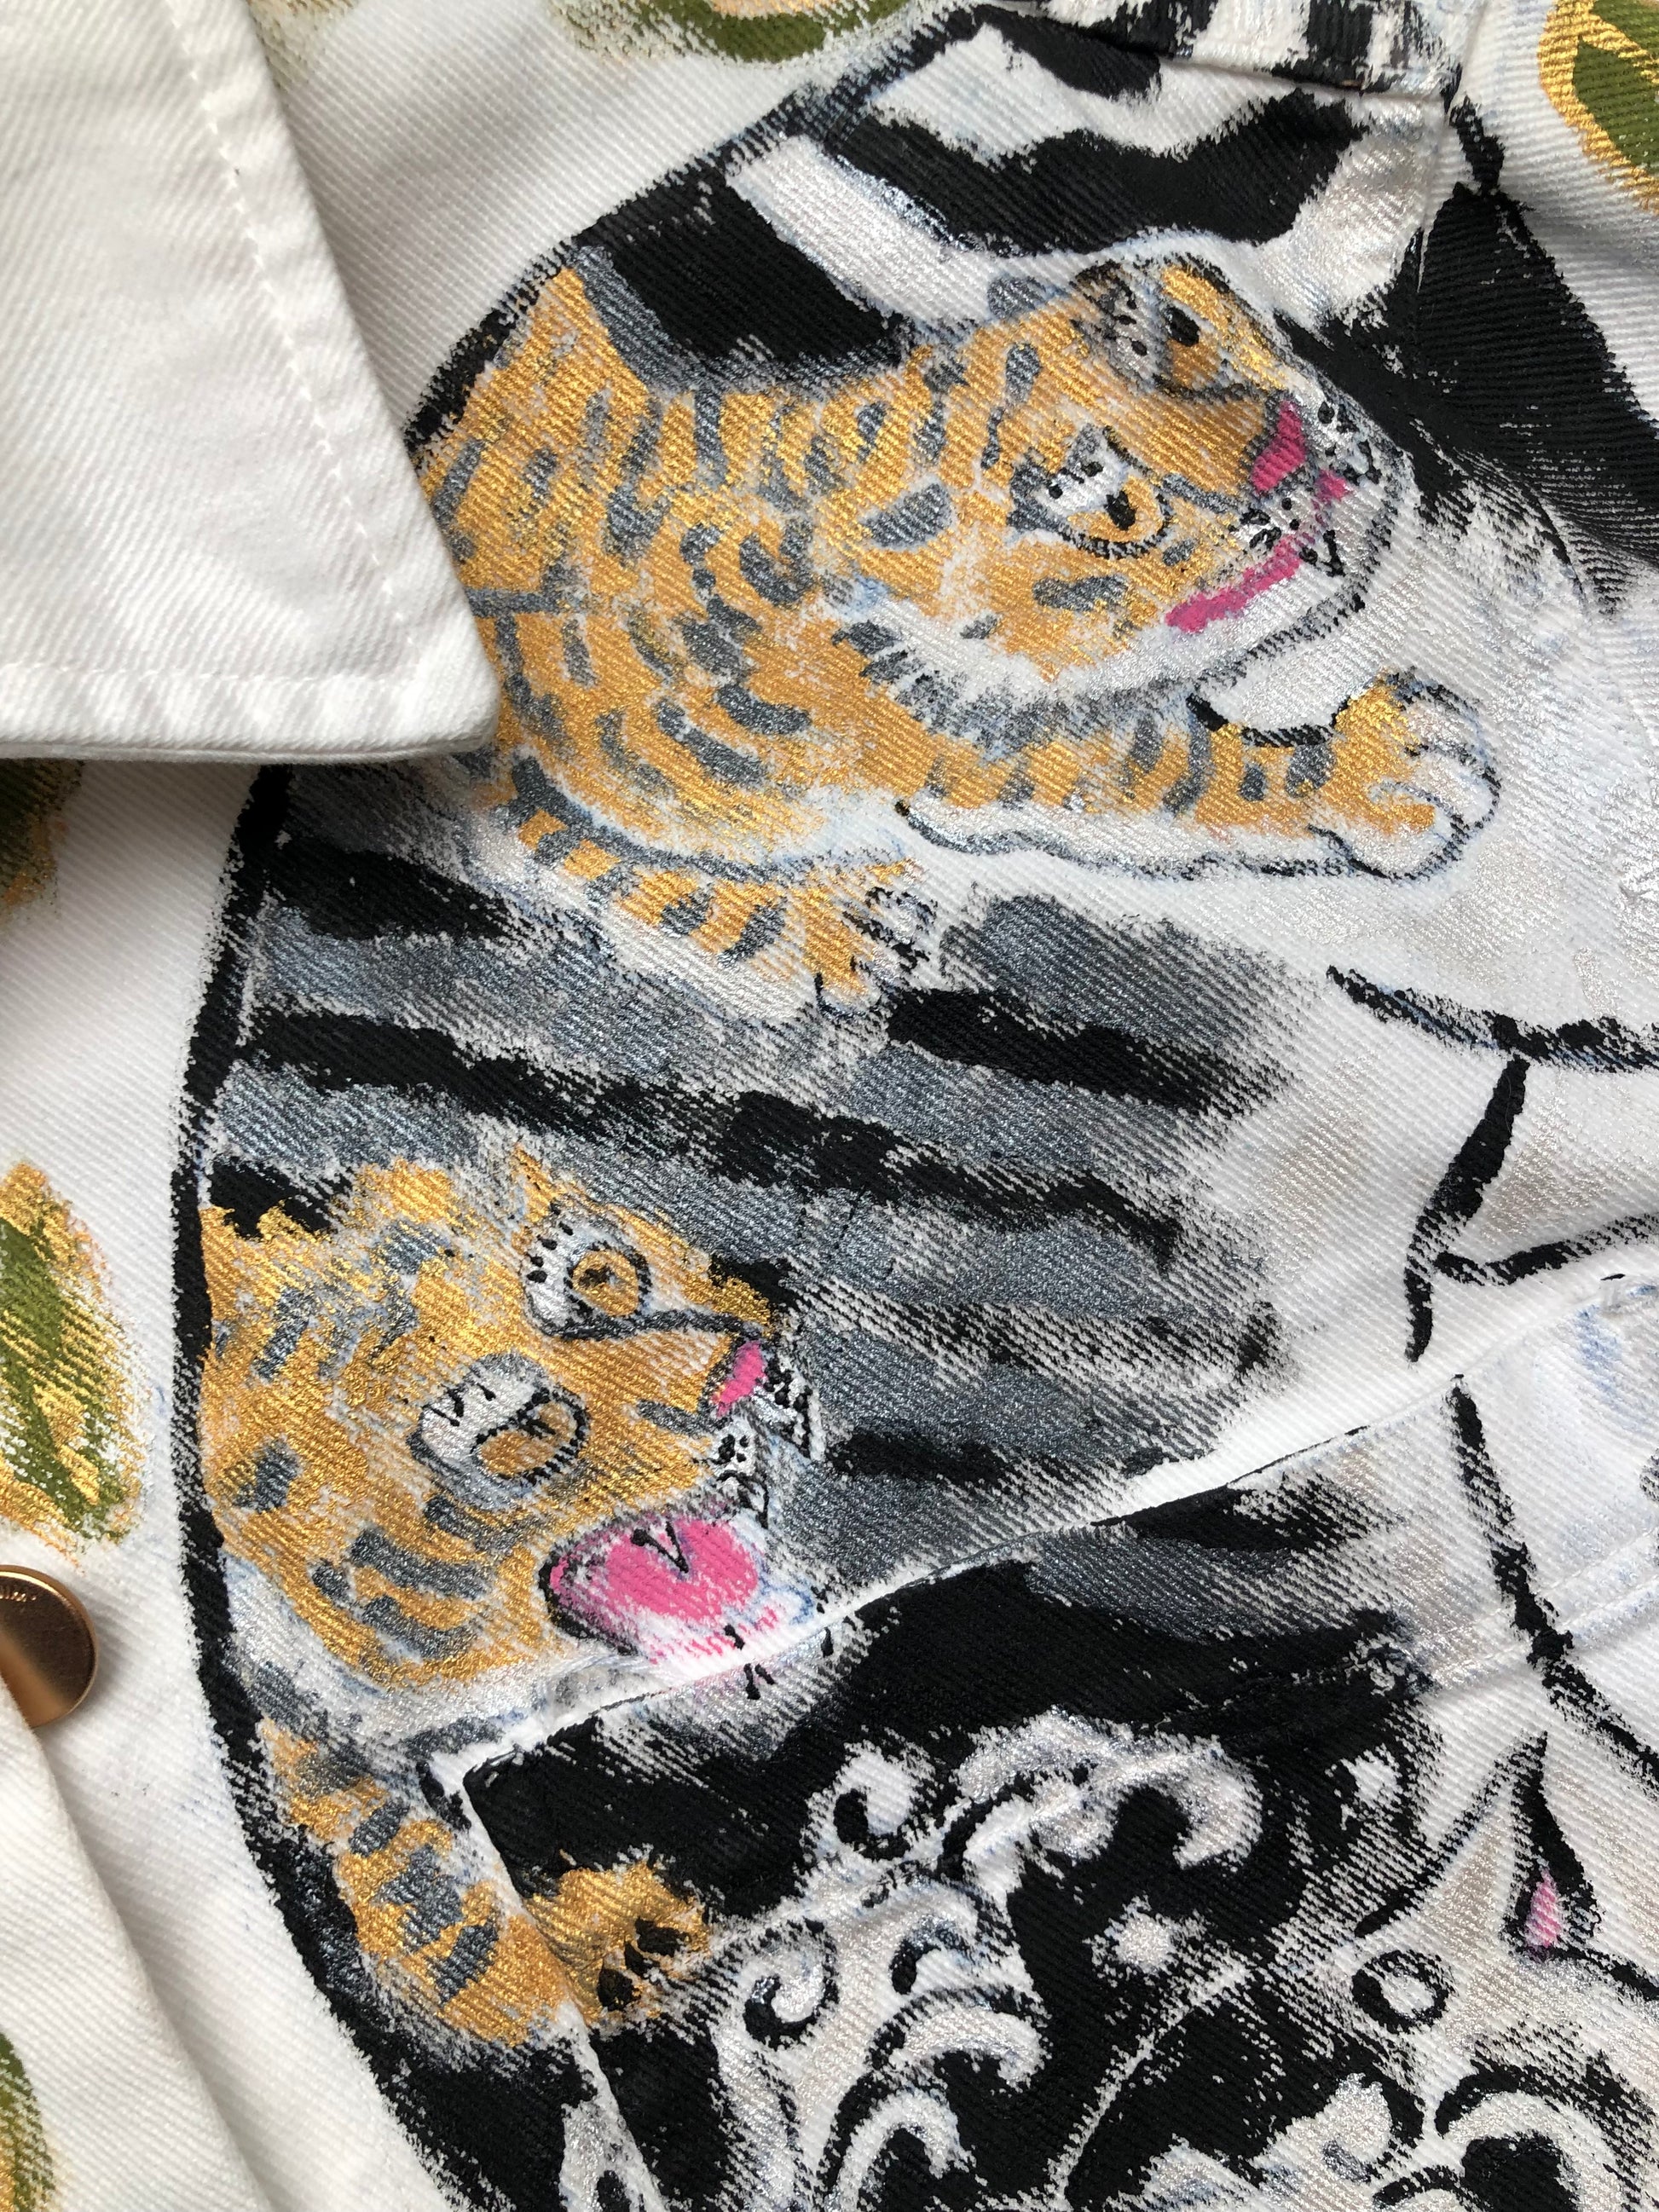 Tigers in detail on a women's denim jacket